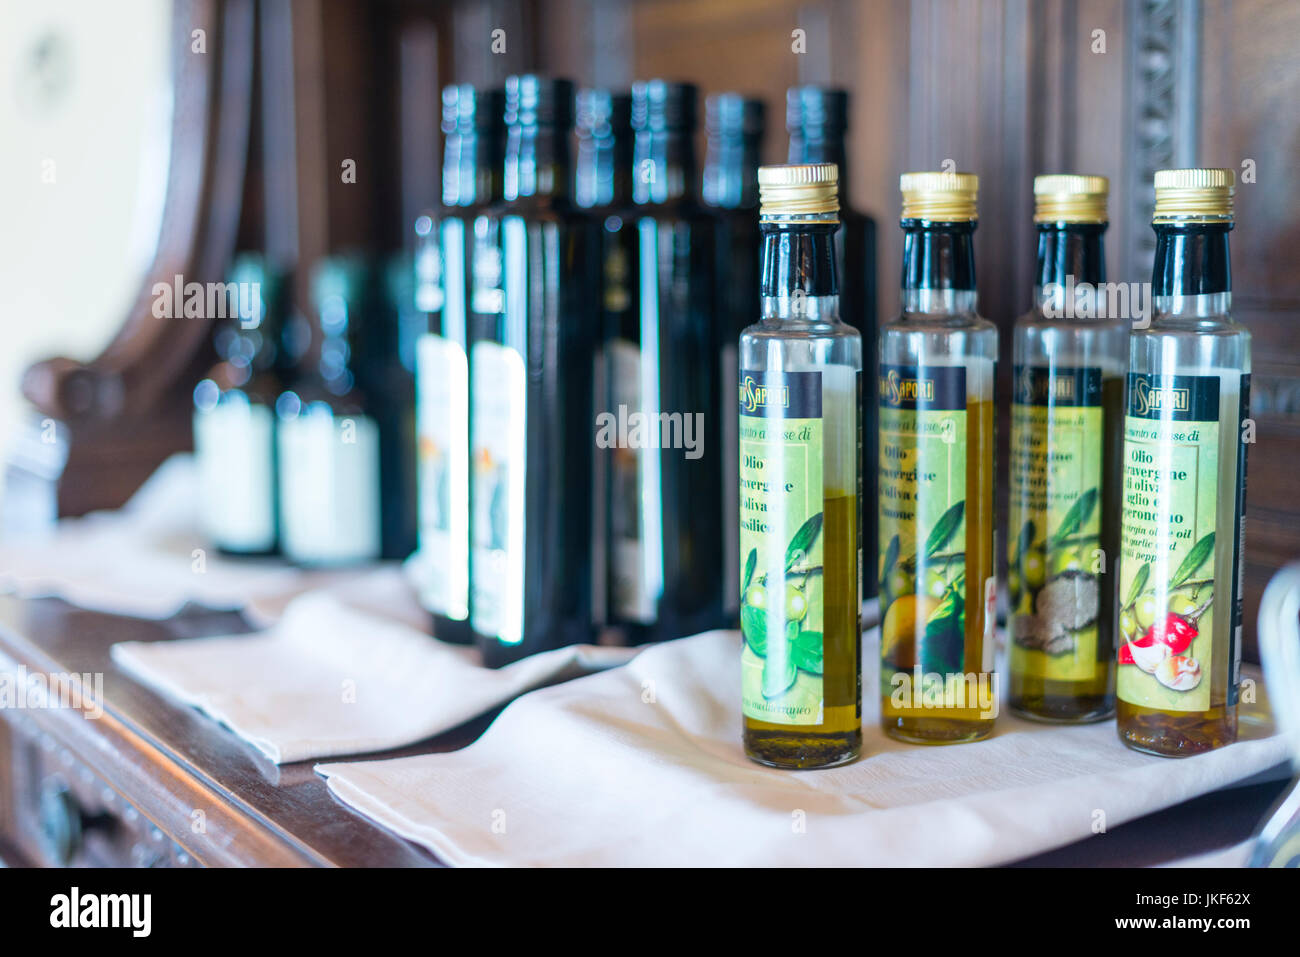 L'huile d'olive, le vinaigre balsamique dans un service de table dans un restaurant italien trattoria Banque D'Images